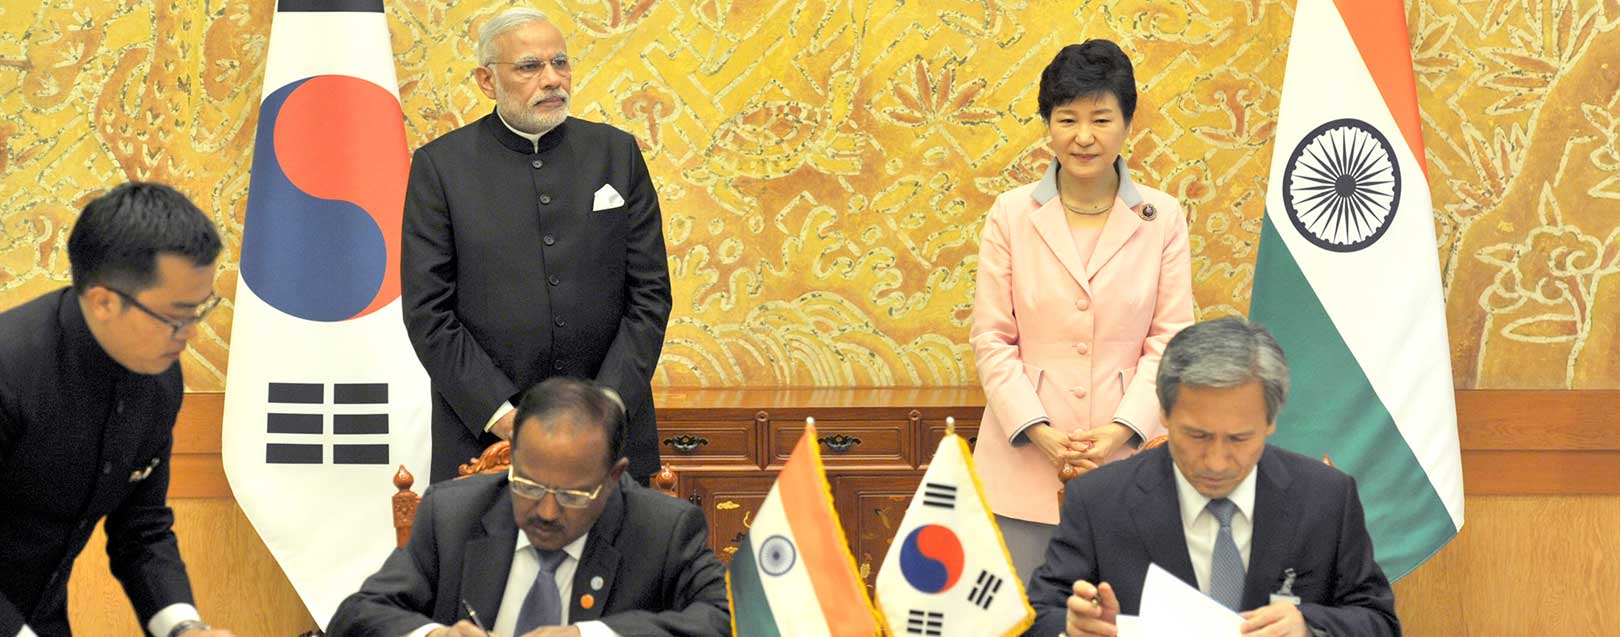 New India-Korea DTAA to provide tax certainty